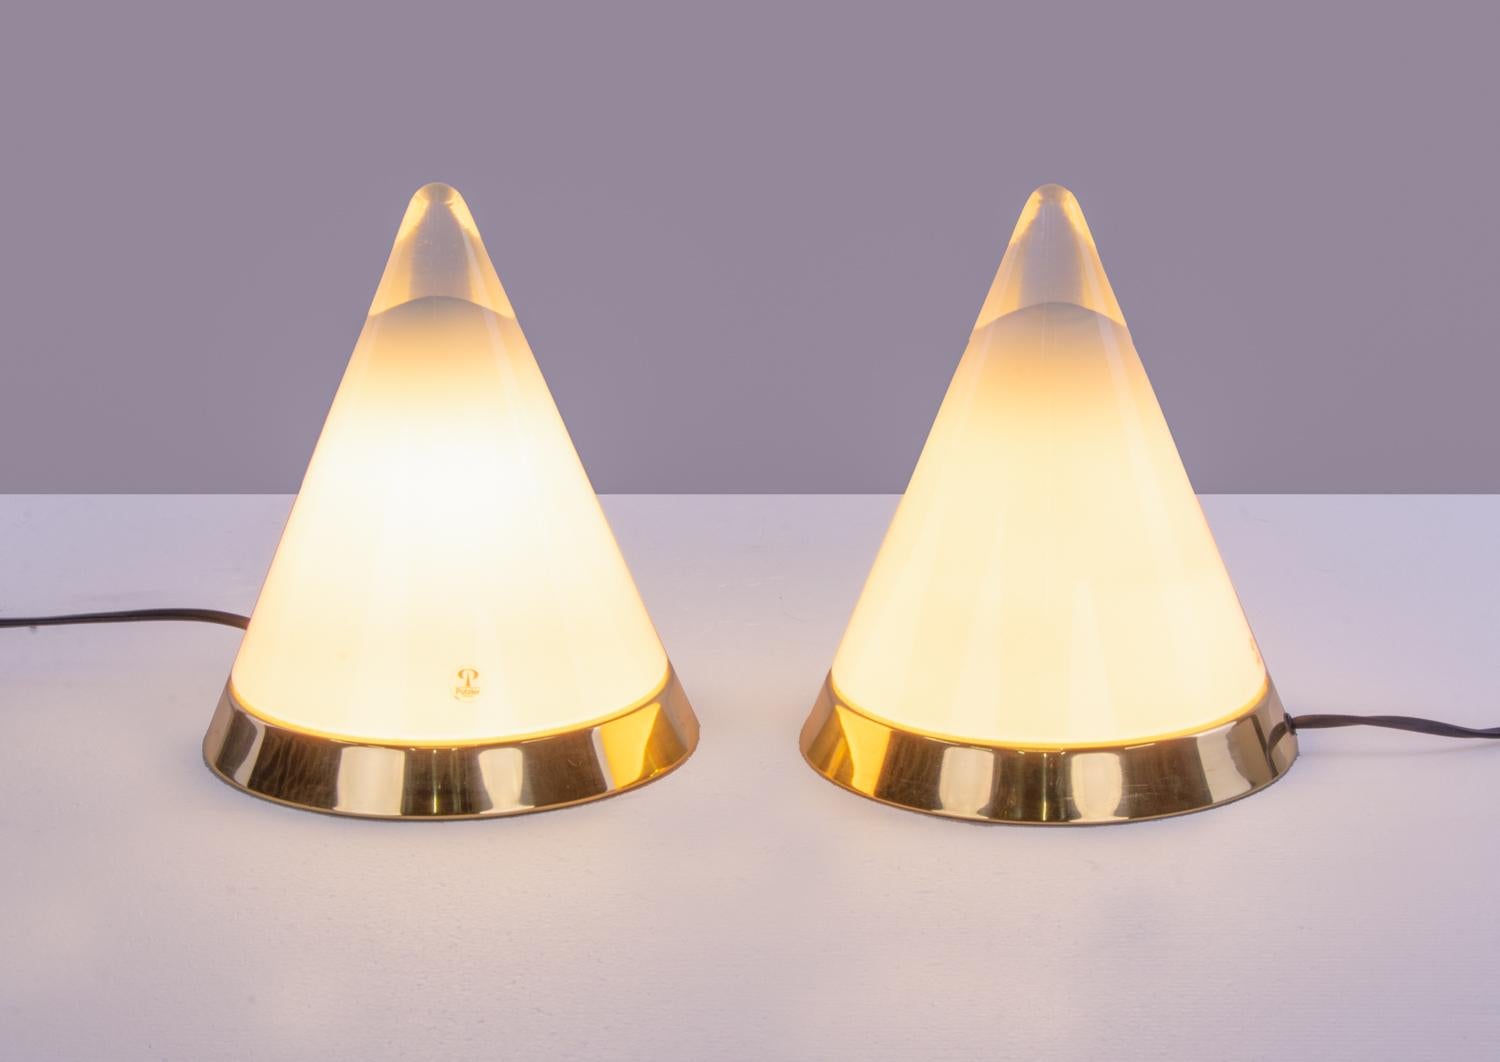 Elegantes lampes de table en cristal conique clair et blanc soufflé à la bouche, modèle 'Kibo' par Peill & Putzler, Allemagne, années 1970. 

Peill & Putzler produit des objets lumineux design en collaboration avec des designers célèbres et de